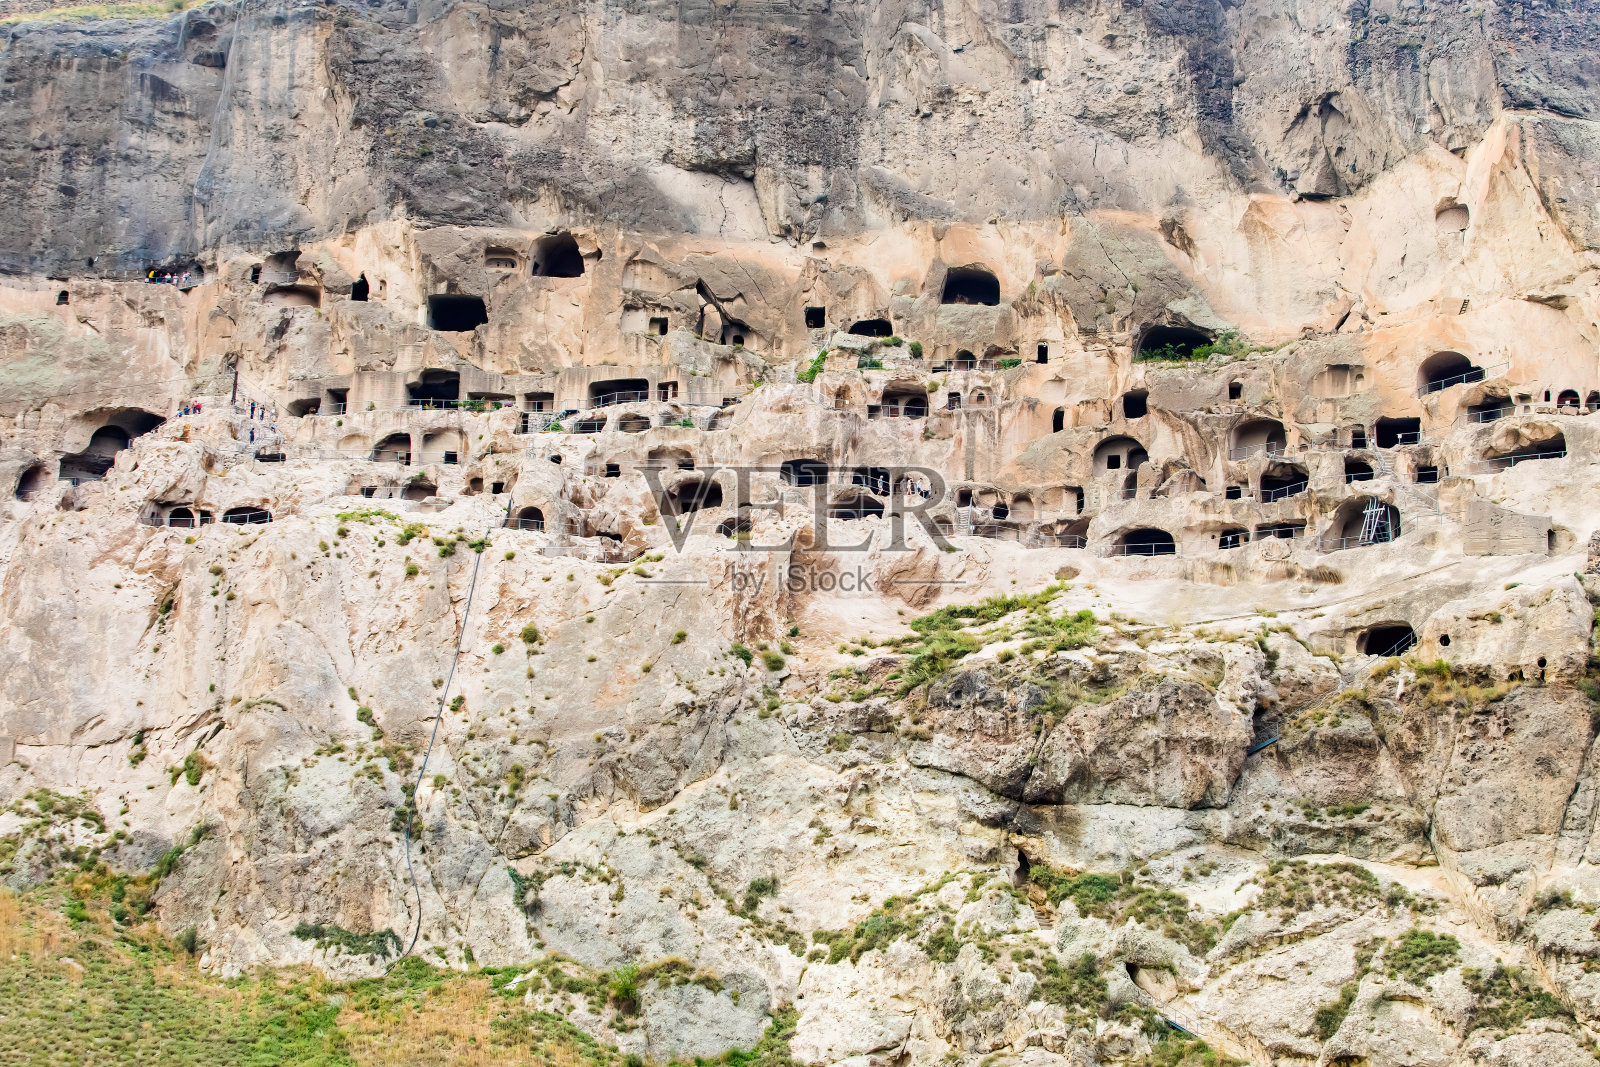 乔治亚历史遗产瓦尔齐亚洞穴的风景照片摄影图片